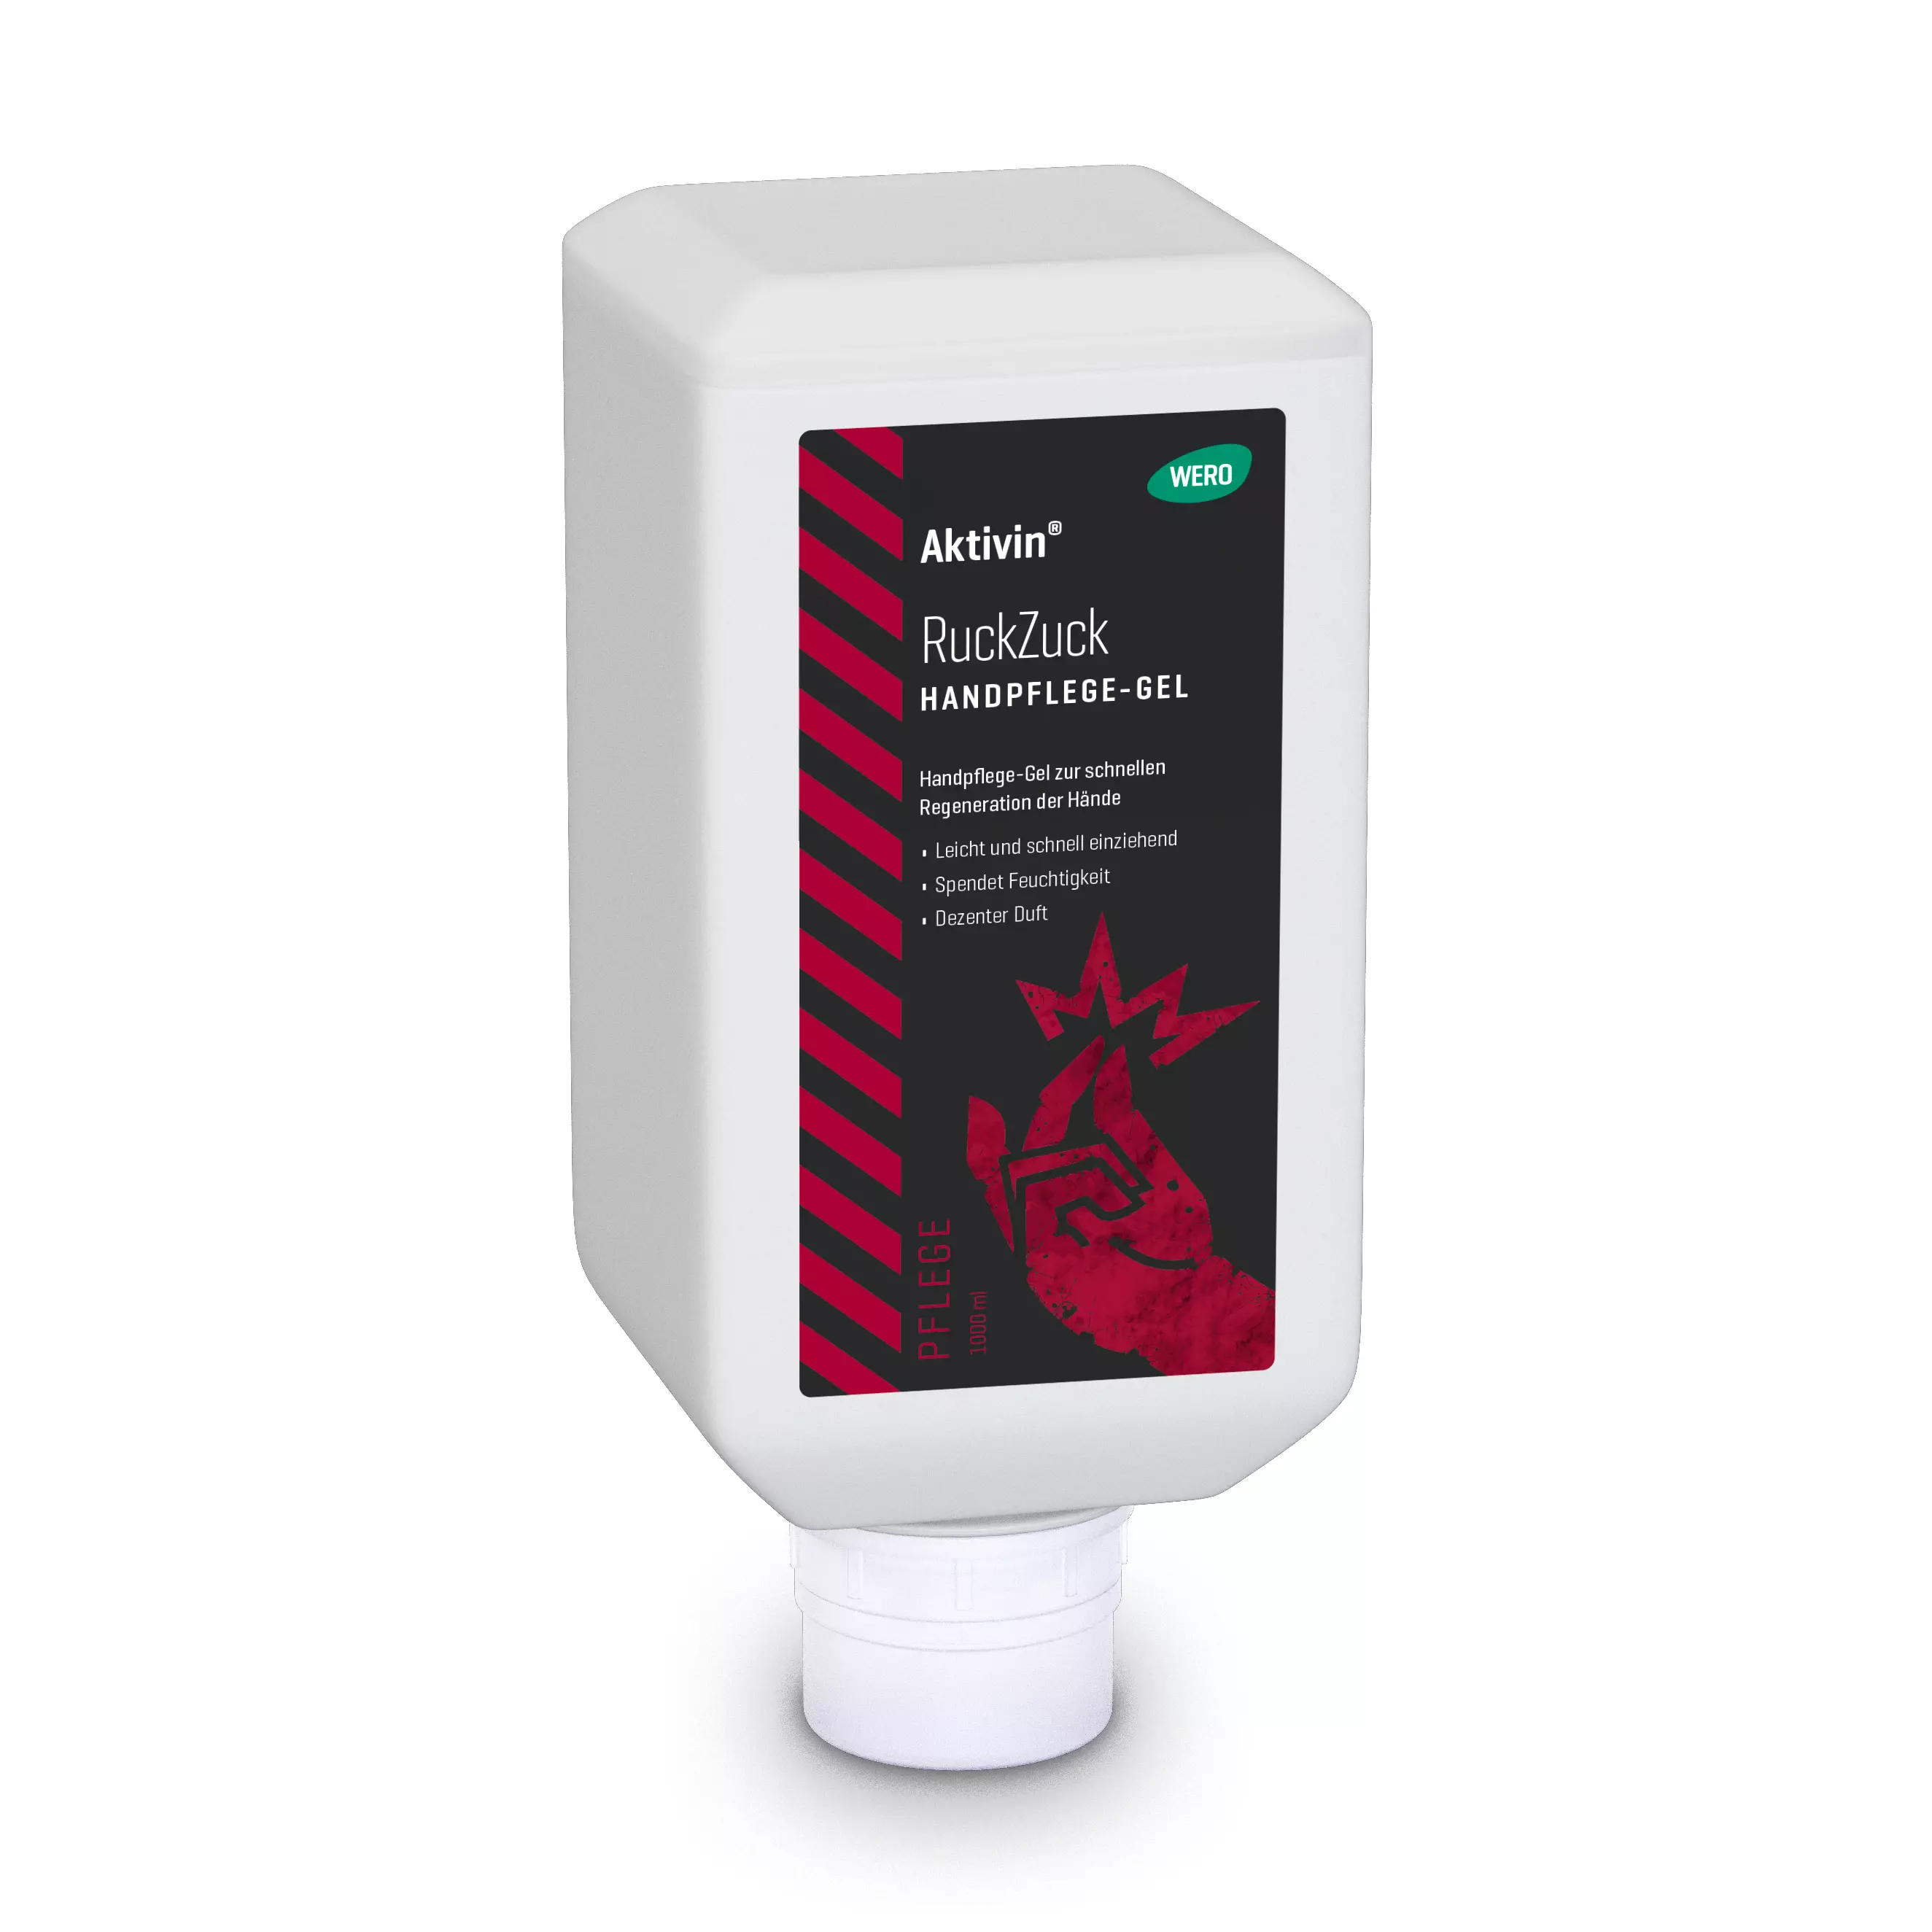 Hand care gel Aktivin® Ruckzuck - soft bottle, 1,000 ml